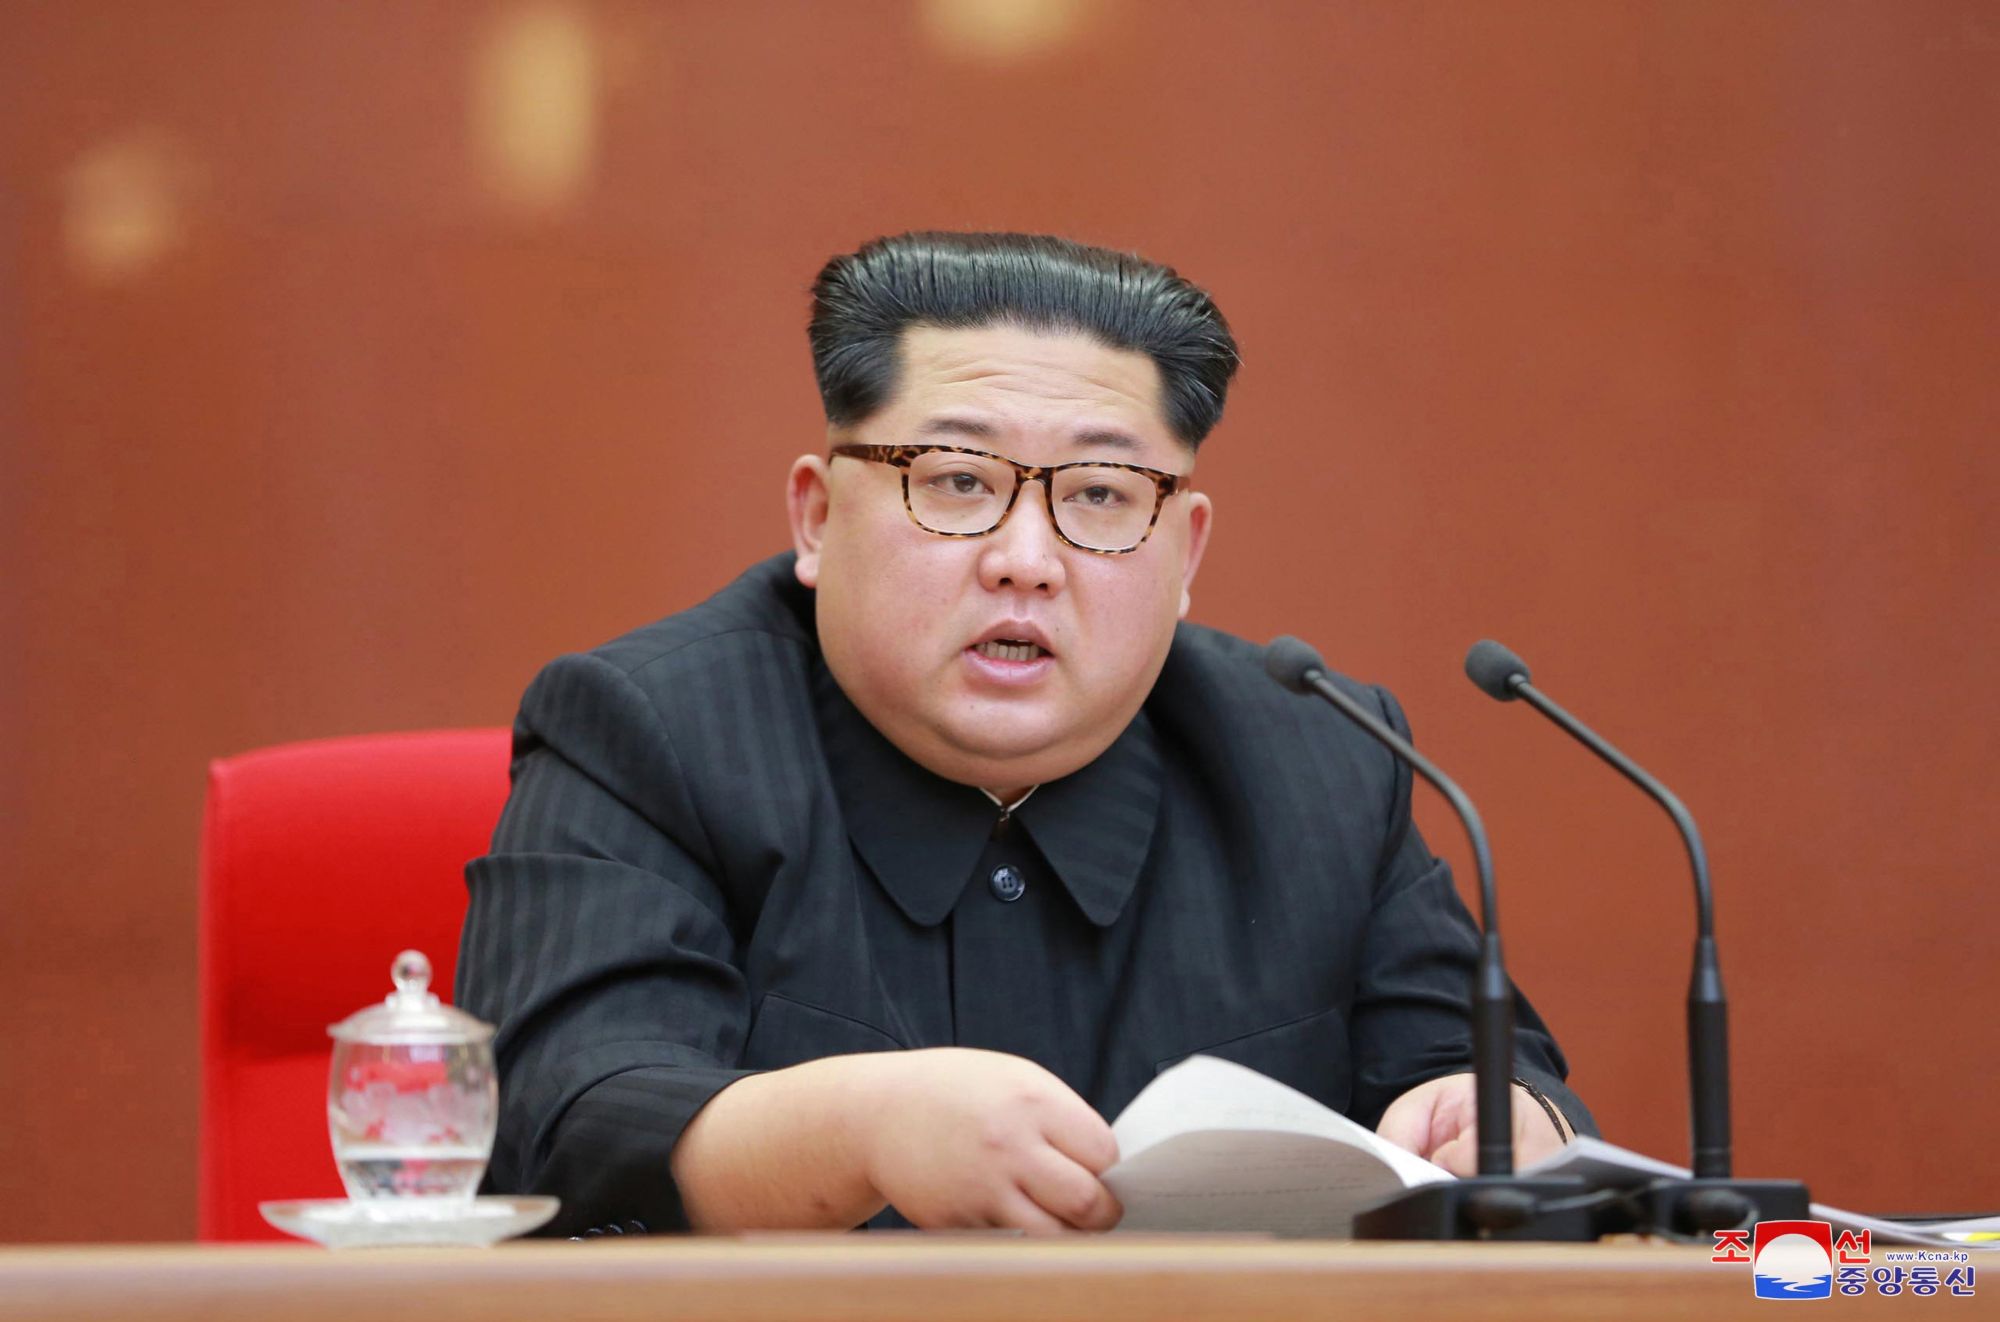 A KCNA észak-koreai hírügynökség által közreadott kép Kim Dzsong Un észak-koreai vezetőről, a párt központi bizottságának plenáris ülésén Phenjanban 2018. április 20-án. Kim Dzsong Un április 21-én bejelentette, hogy Phenjan felfüggeszti nukleáris kísérleteit és rakétatesztjeit, továbbá bezárja nukleáris kísérleti telepét. (MTI/EPA/KCNA)